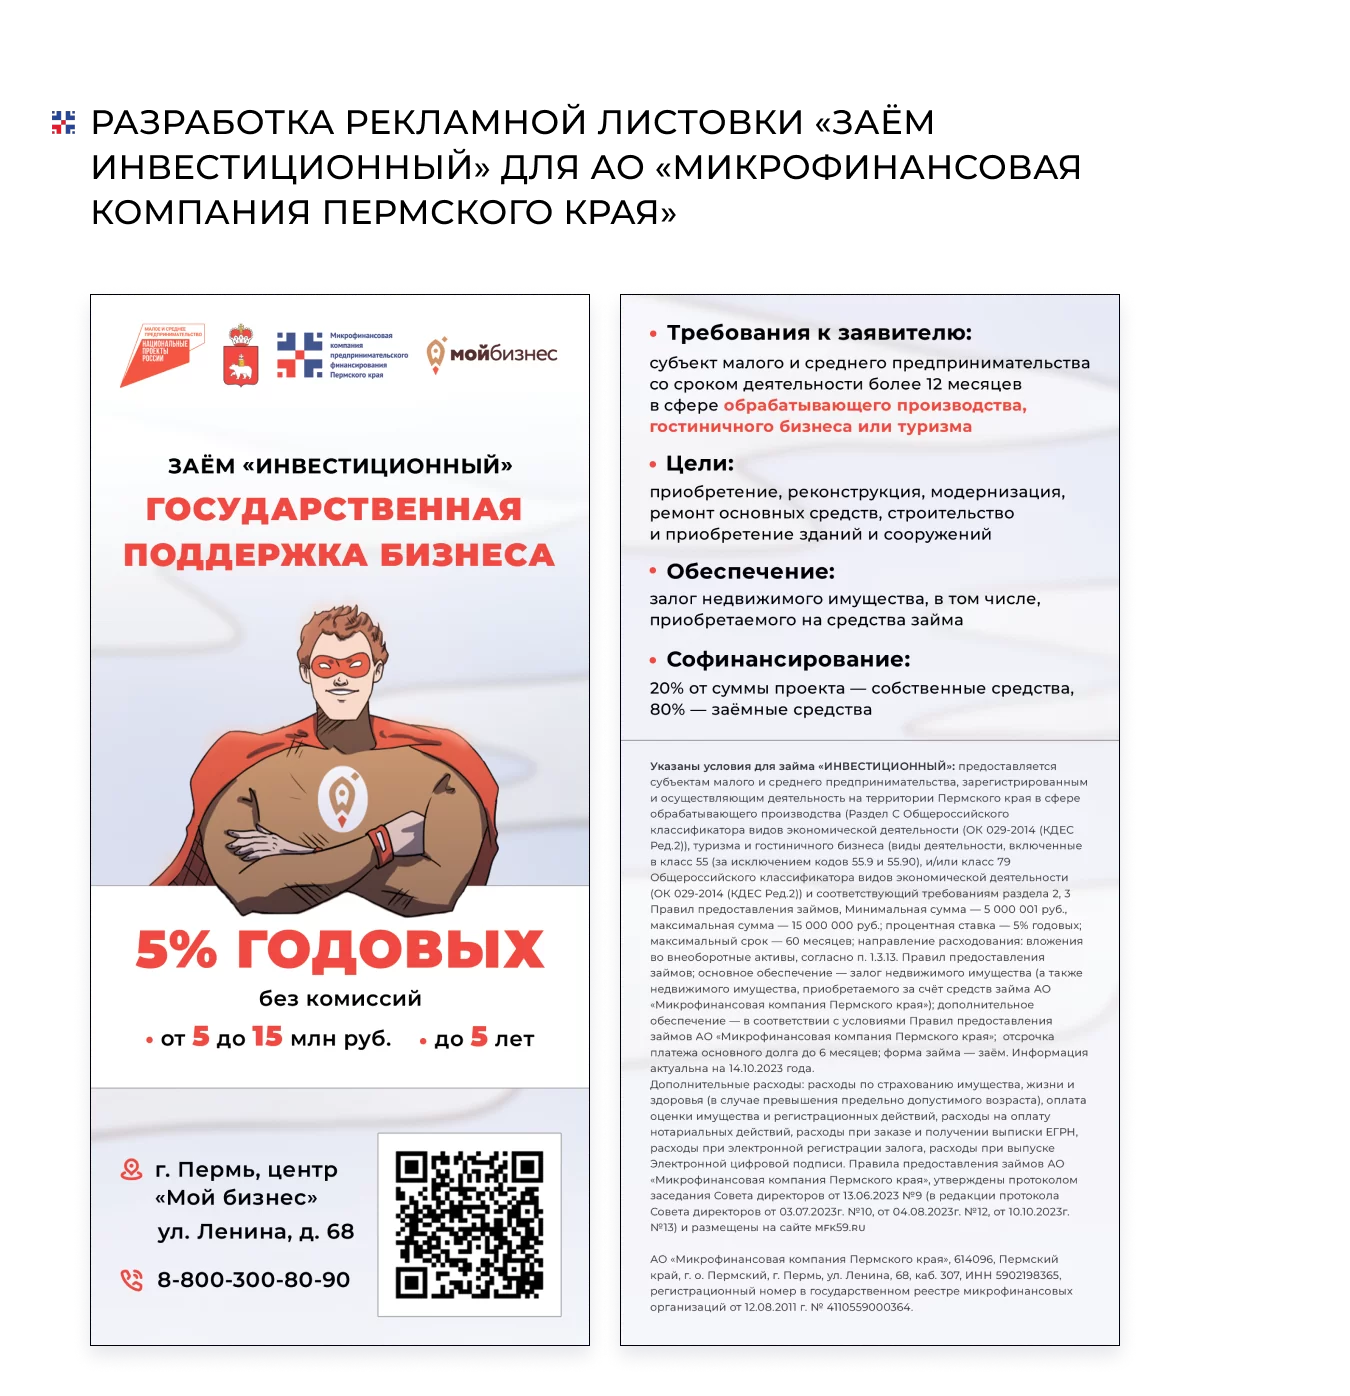 Разработка рекламных листовок для АО «Микрофинансовая компания Пермского края»